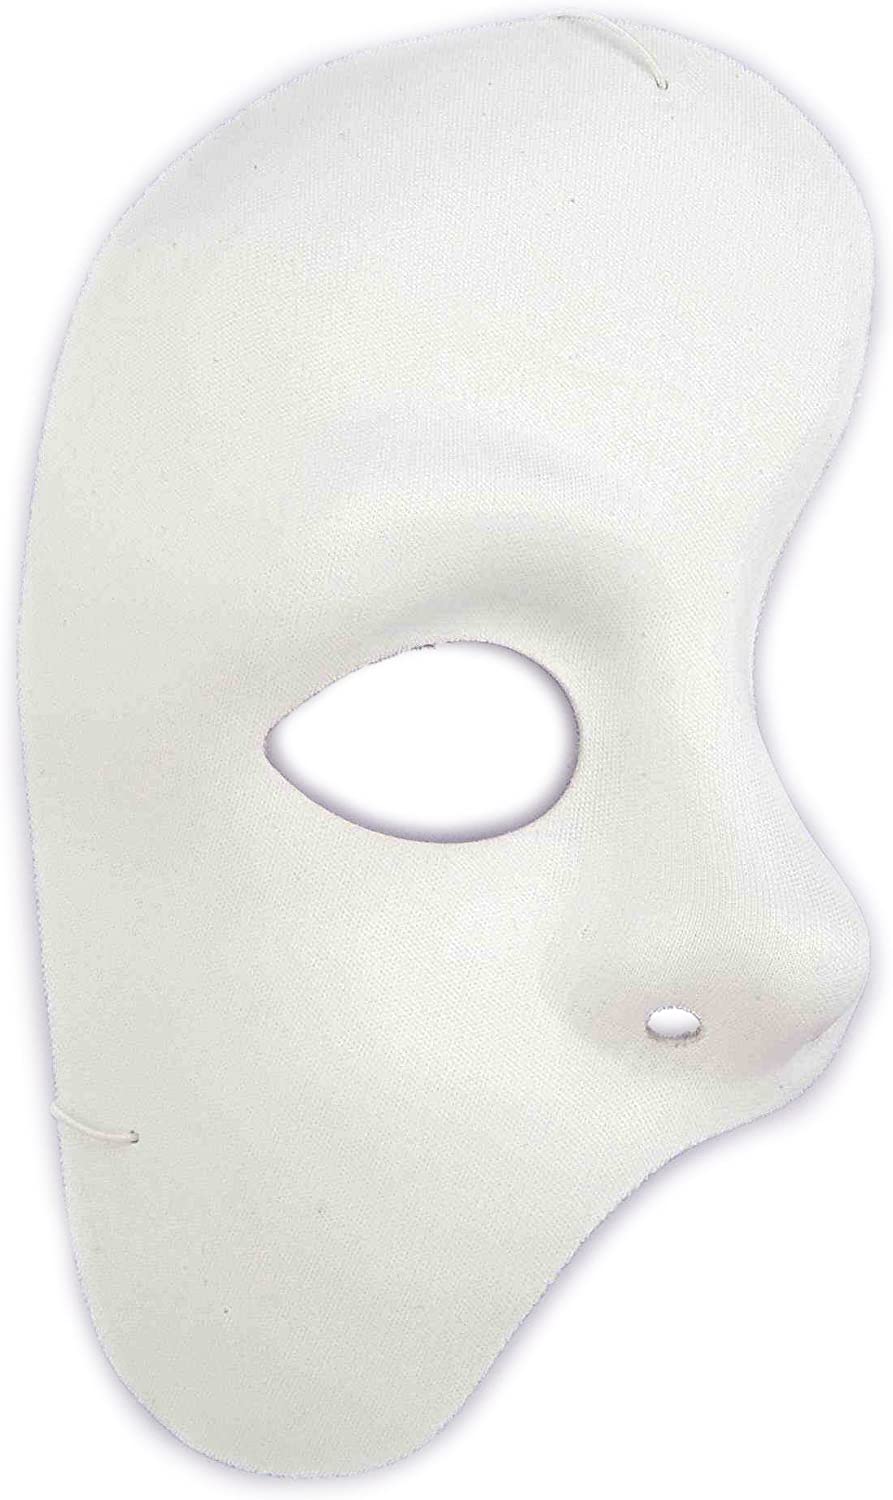 Máscara del Fantasma de la Ópera